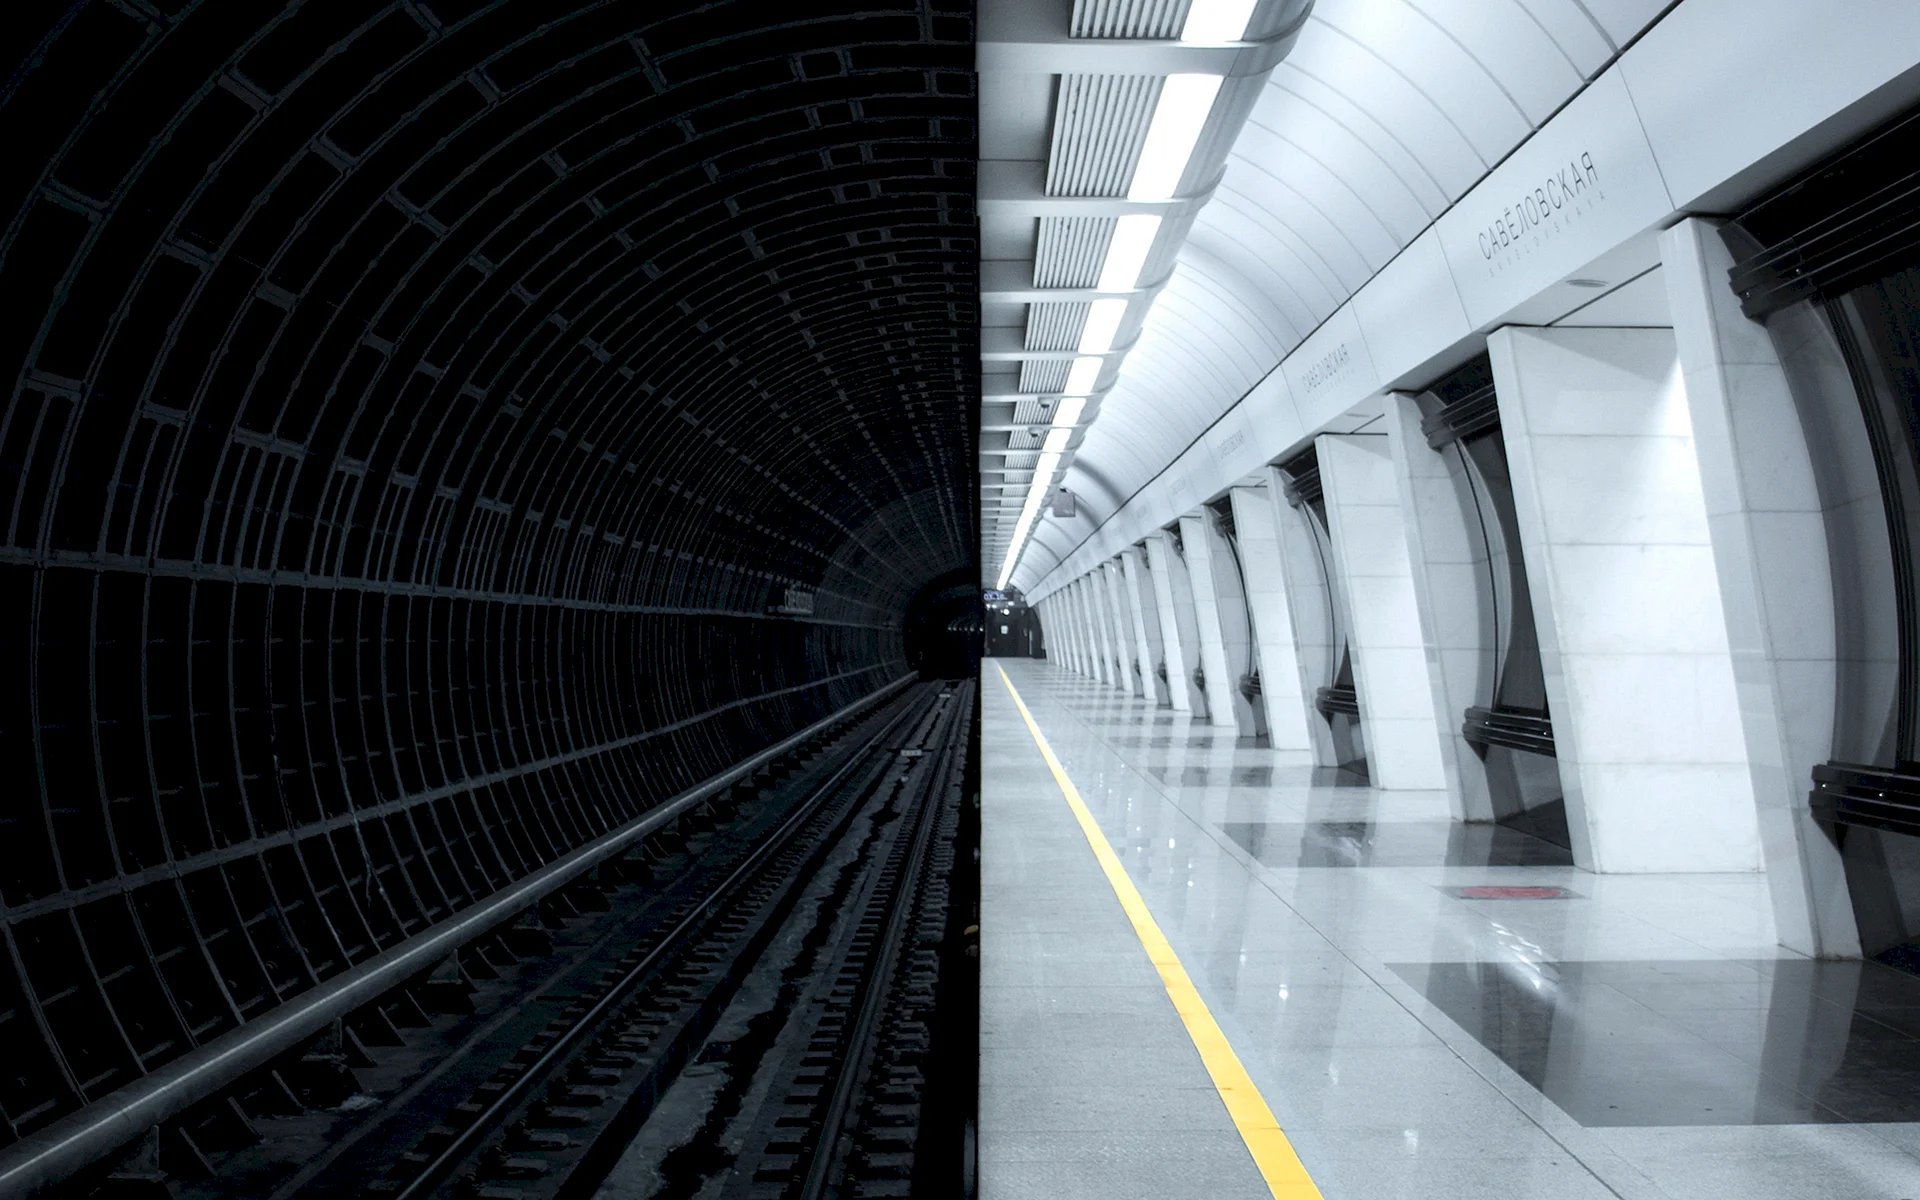 Метро тоннель подземелье Московского метрополитена